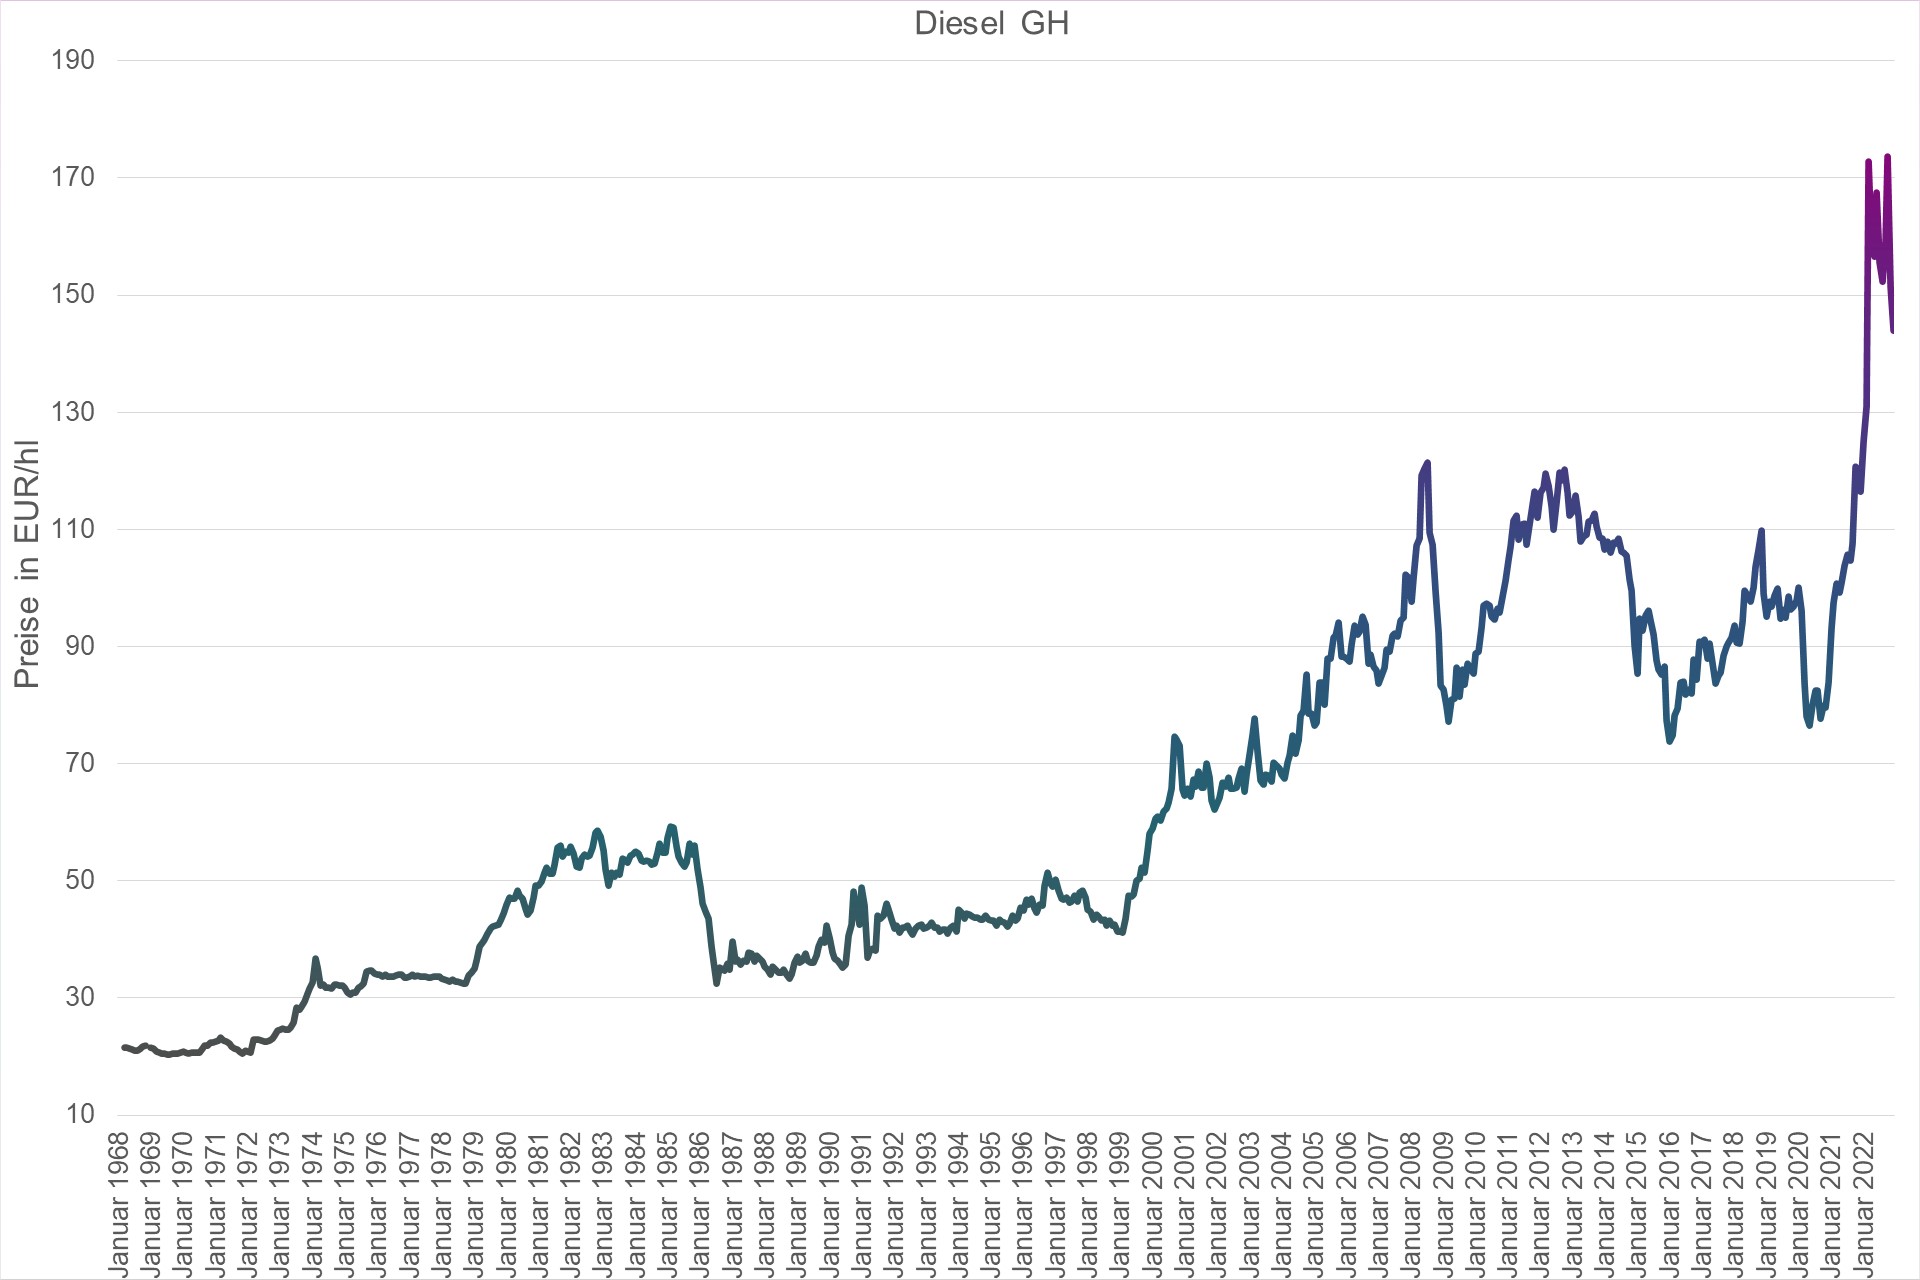 Grafik Preisentwicklung Diesel Großhandel